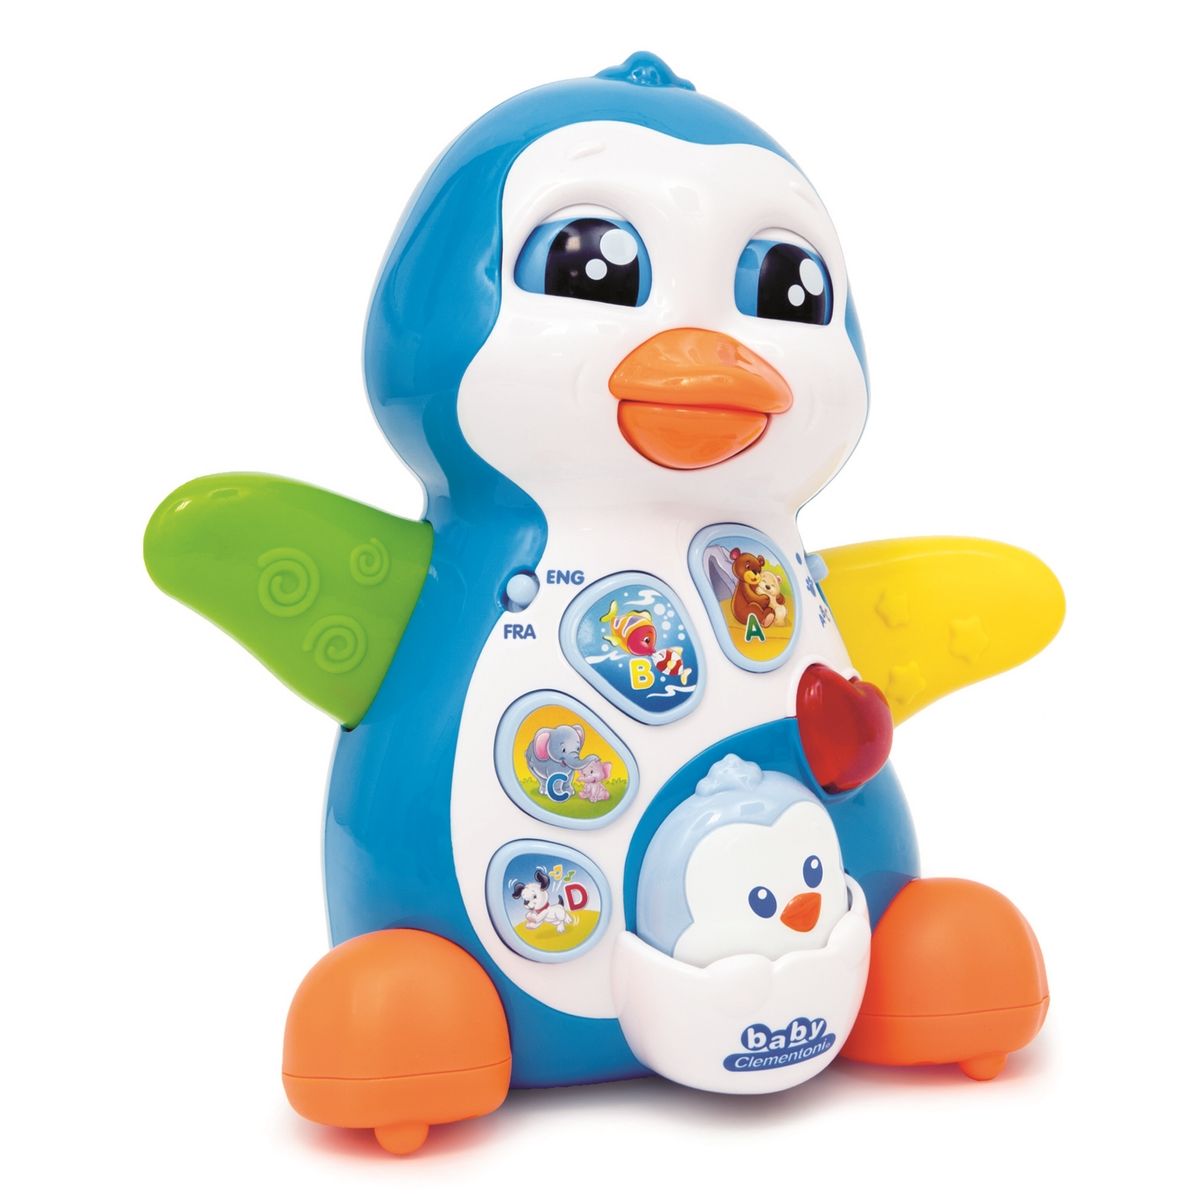 Она это игрушка мама. Игрушка Пингвин интерактивная. Пингвин игрушка интерактивная развивающая. Музыкальный Пингвин игрушка. Пингвинёнок пузыкалтная игрушка.